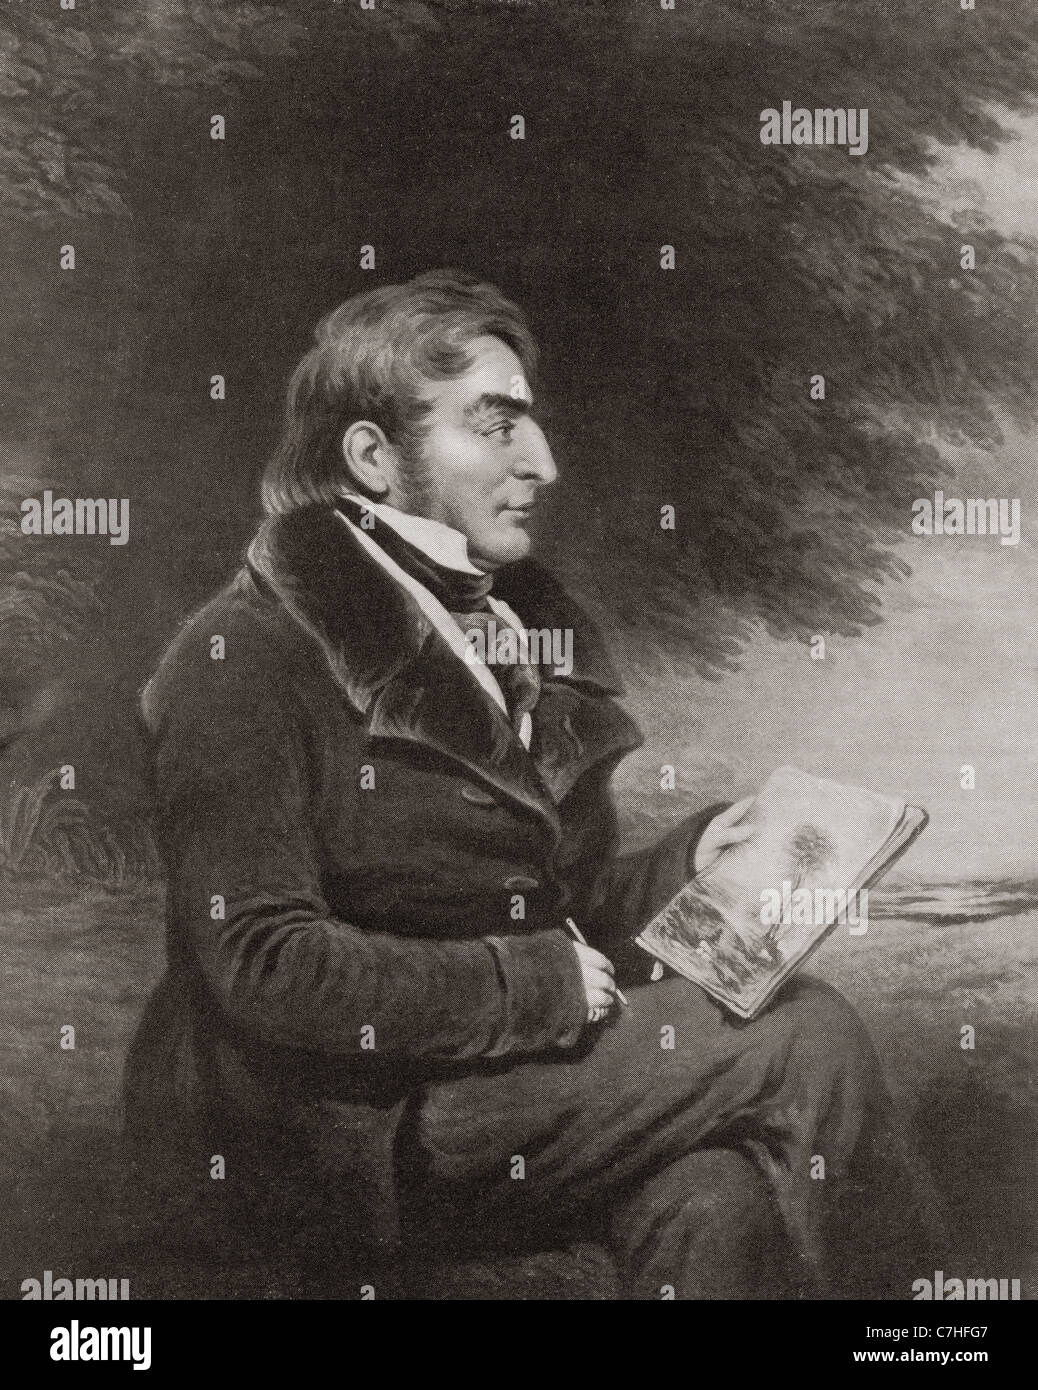 Joseph Mallord William Turner, 1775 – 1851. Englischen Romantik Landschaftsmaler, Aquarellist und Grafiker. Stockfoto